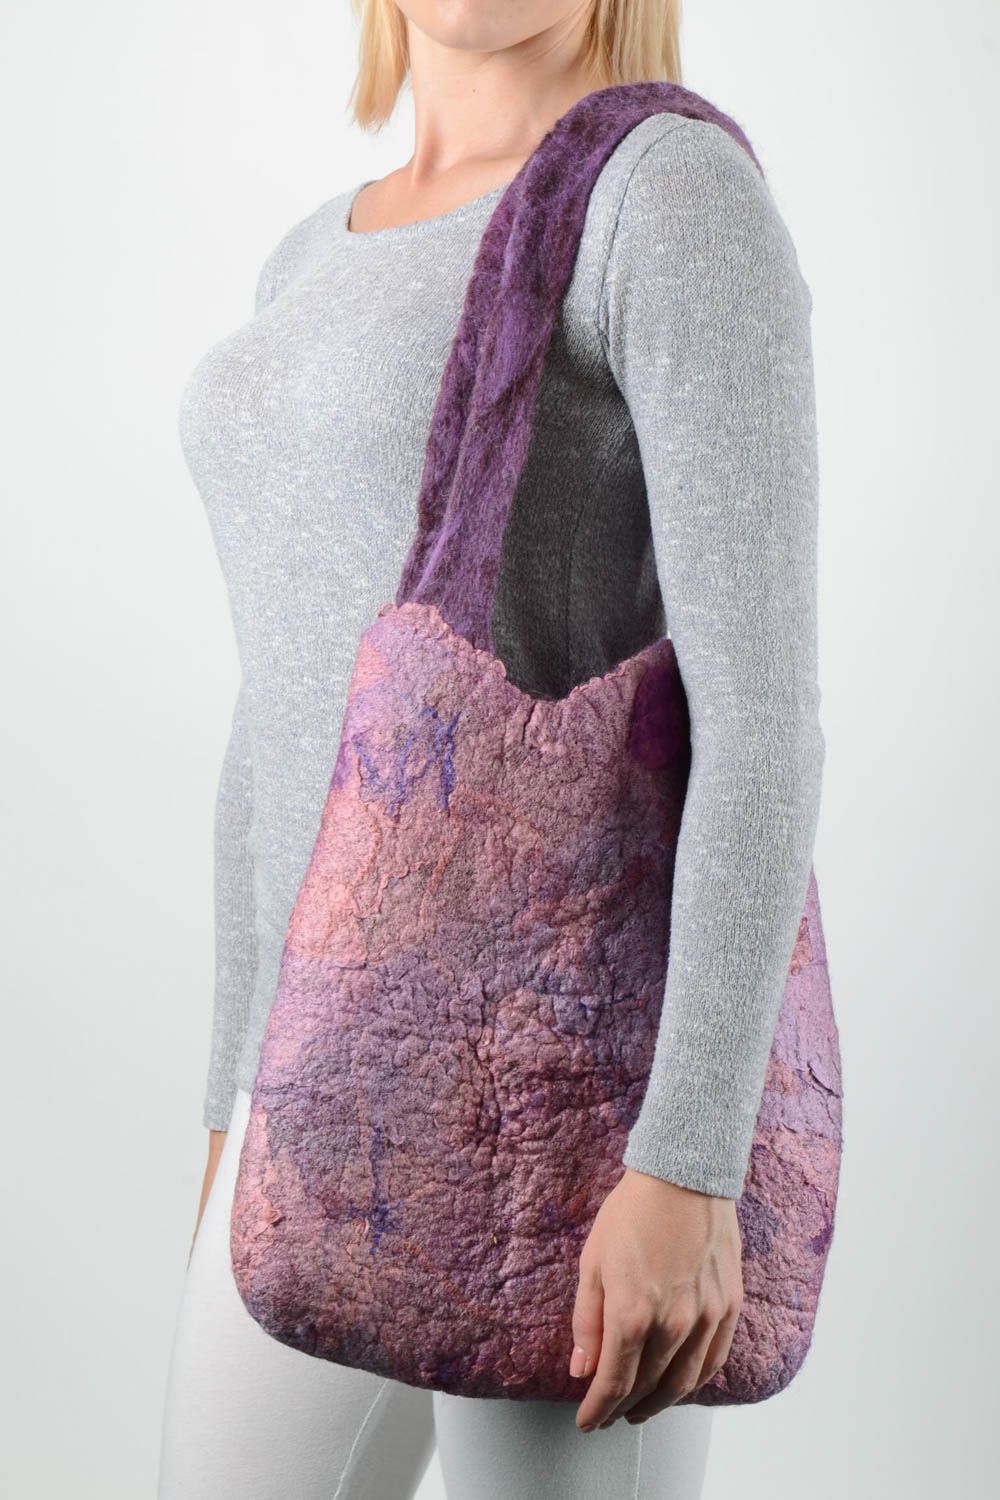 Handmade bag designer bag felting accessory gift for women bag for girls photo 1